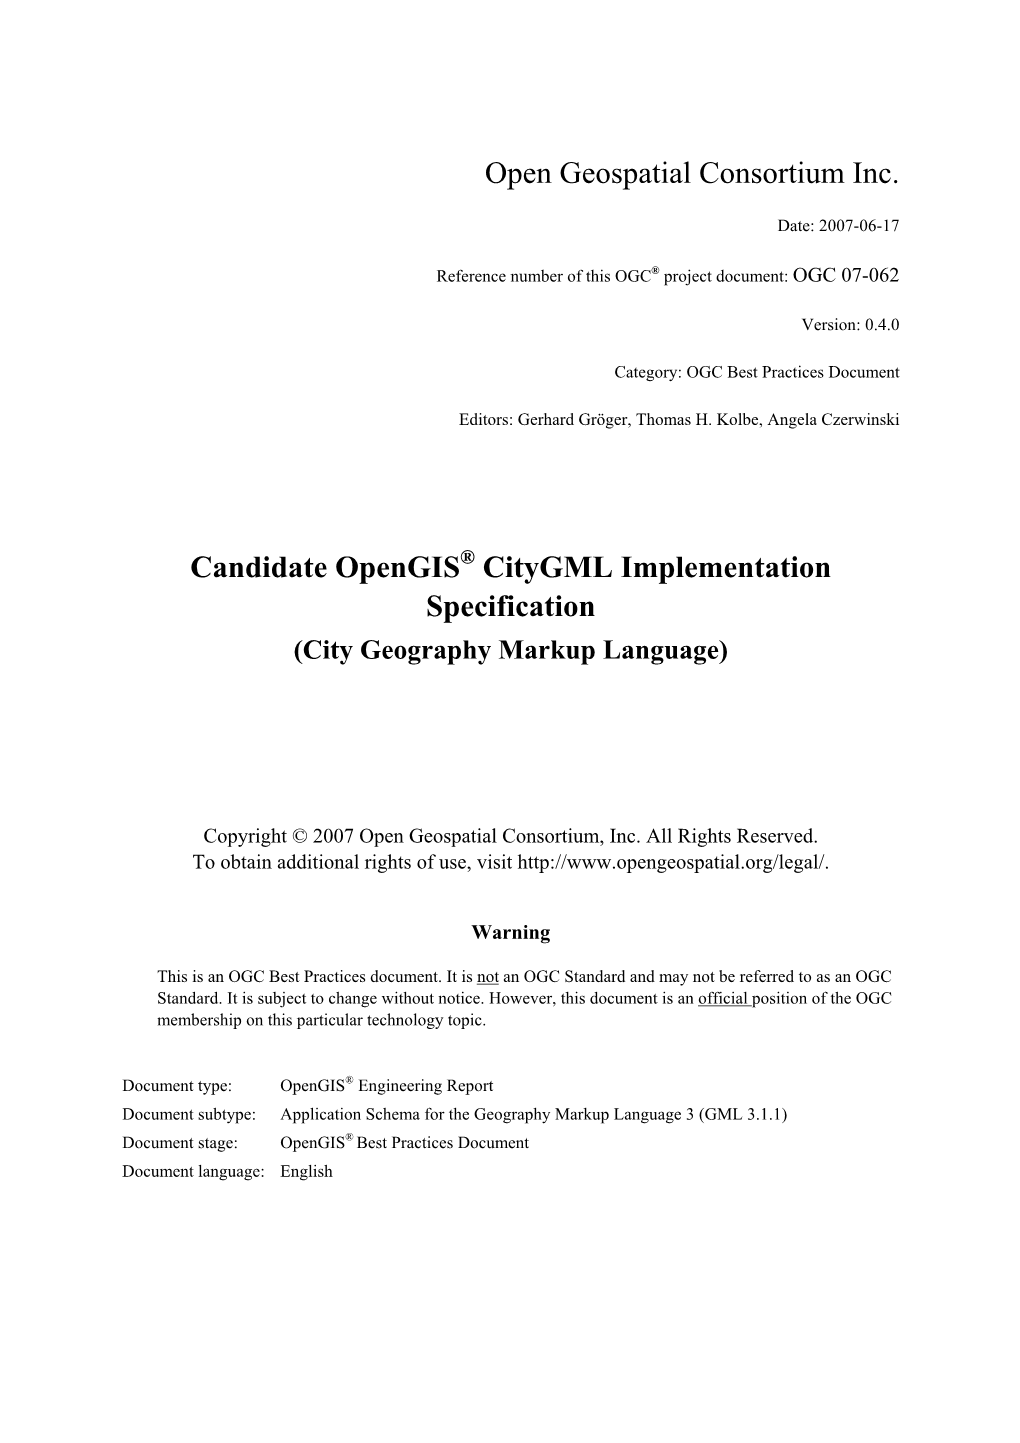 Citygml Specification Document to OGC